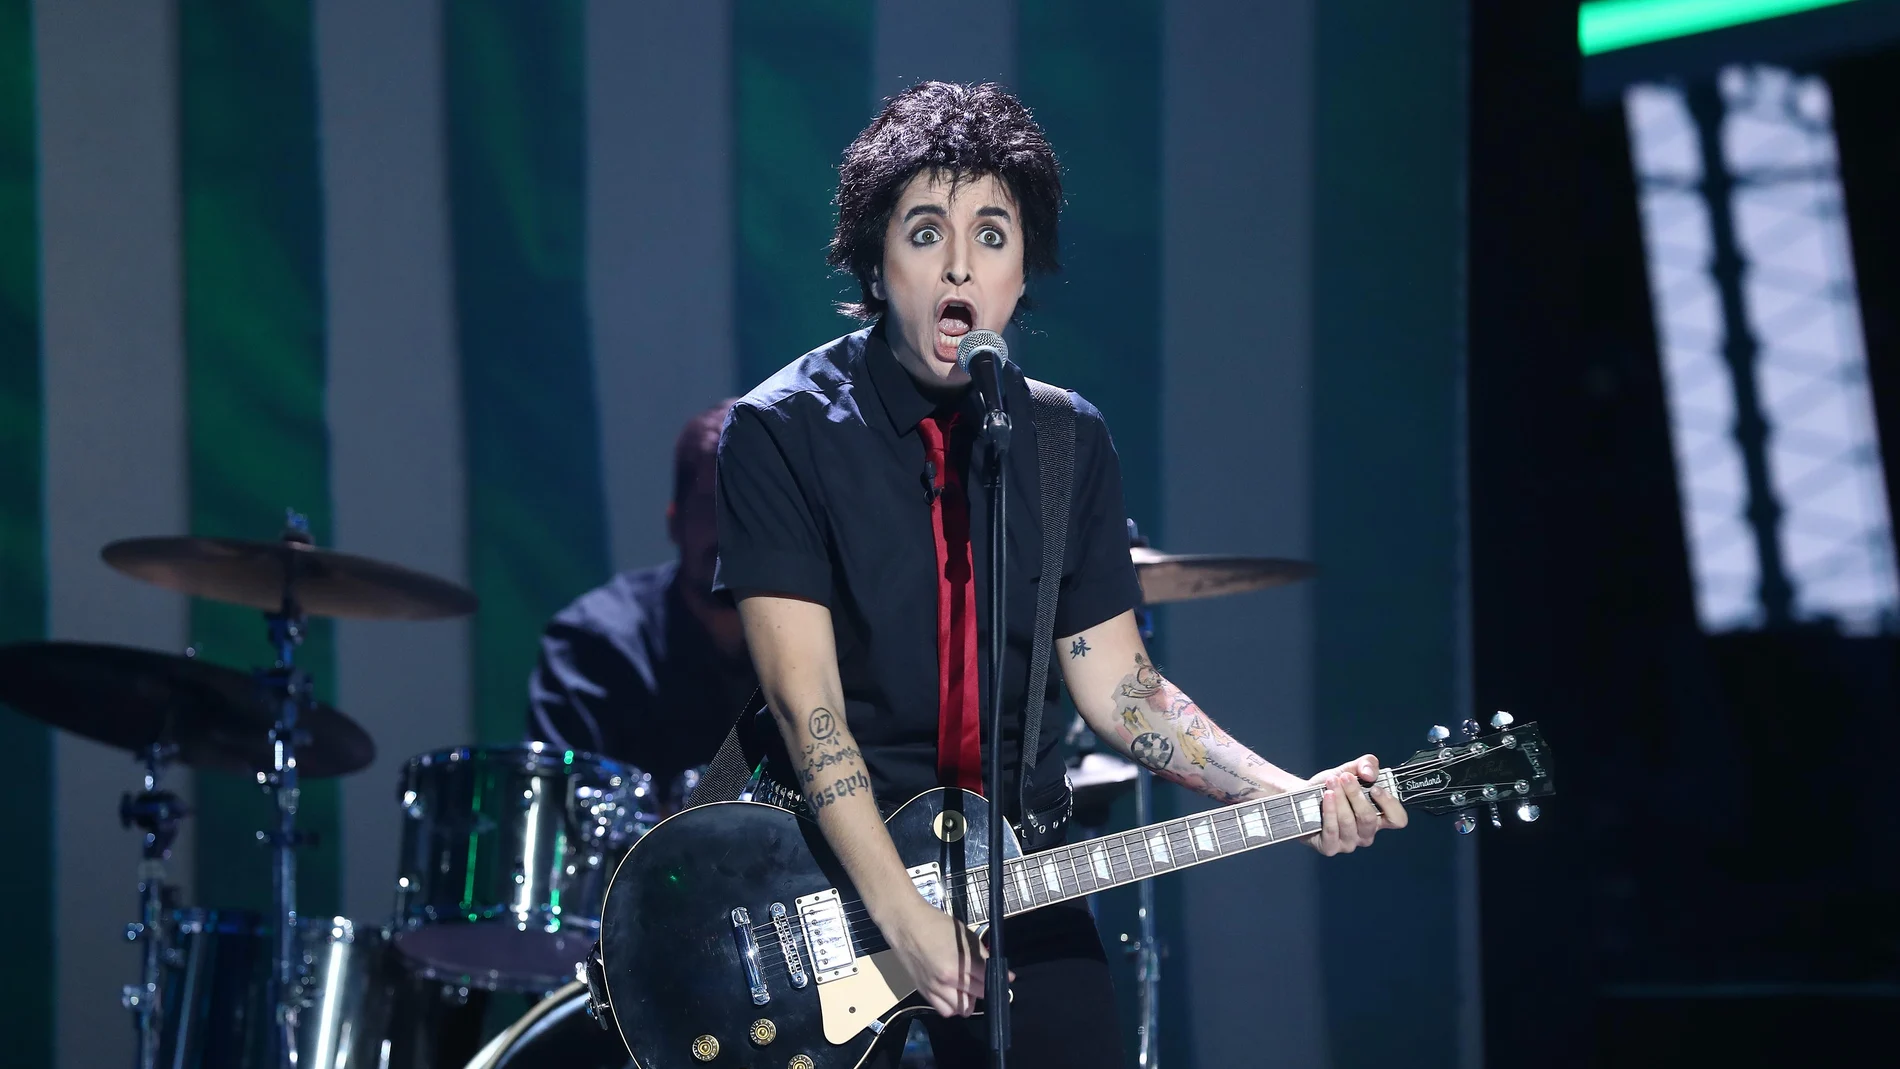 Mimi nos rompe los esquemas como Green Day en 'American idiot'